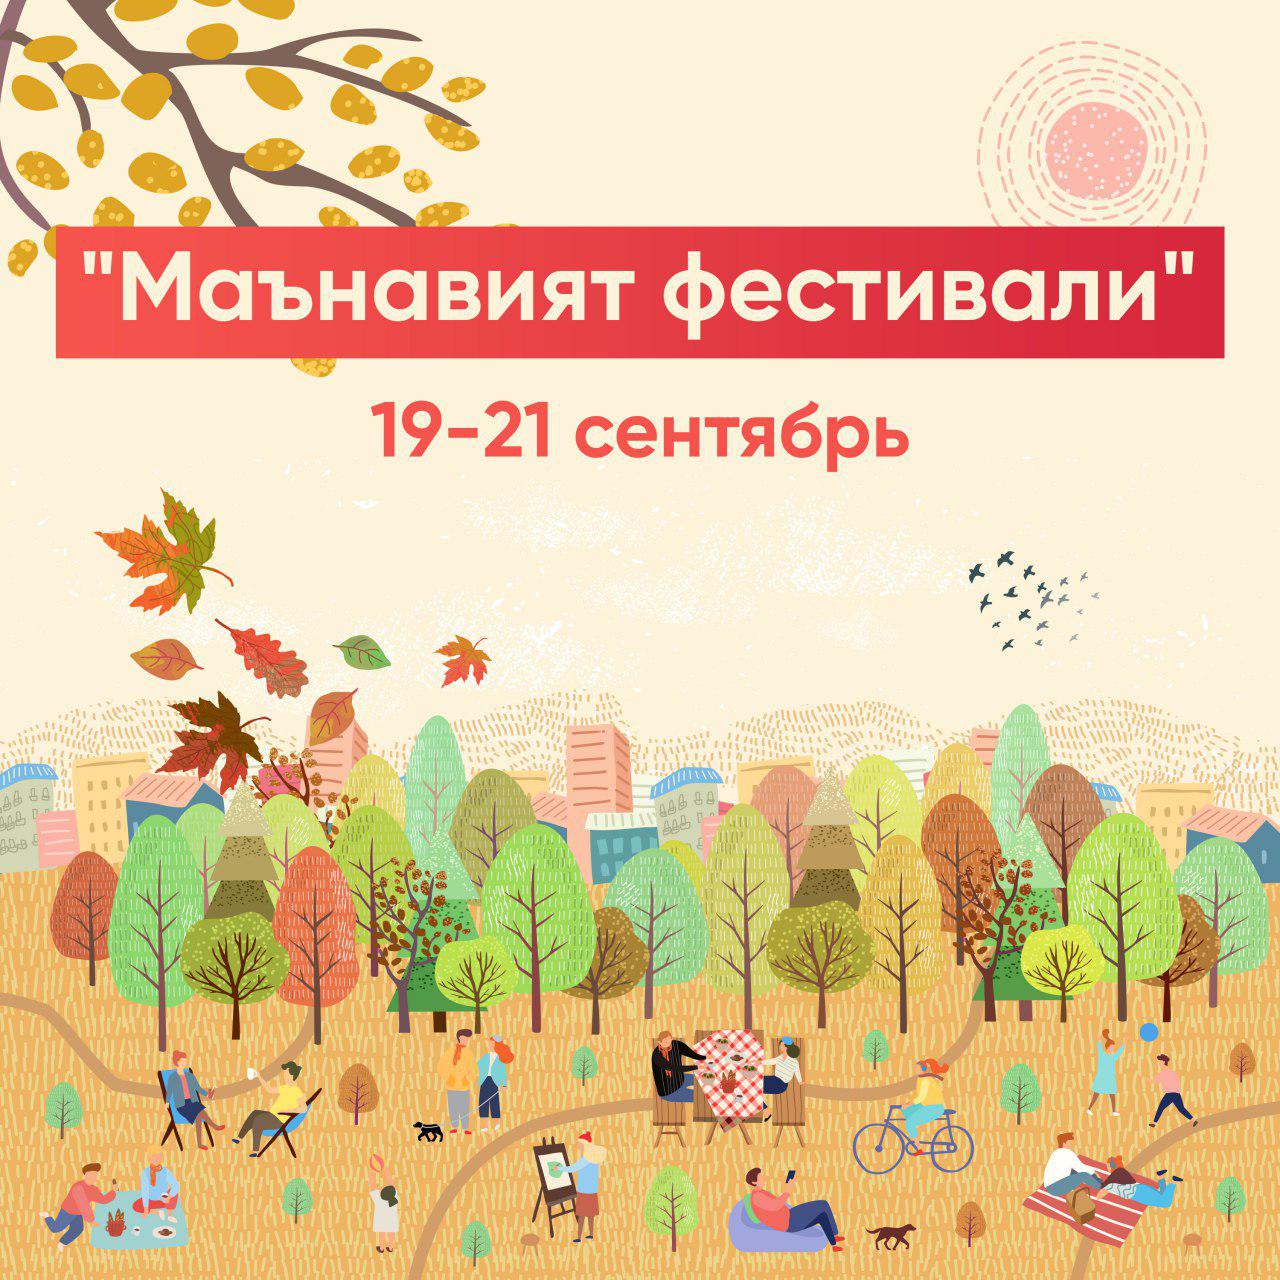 В Ташкенте пройдет фестиваль духовной культуры